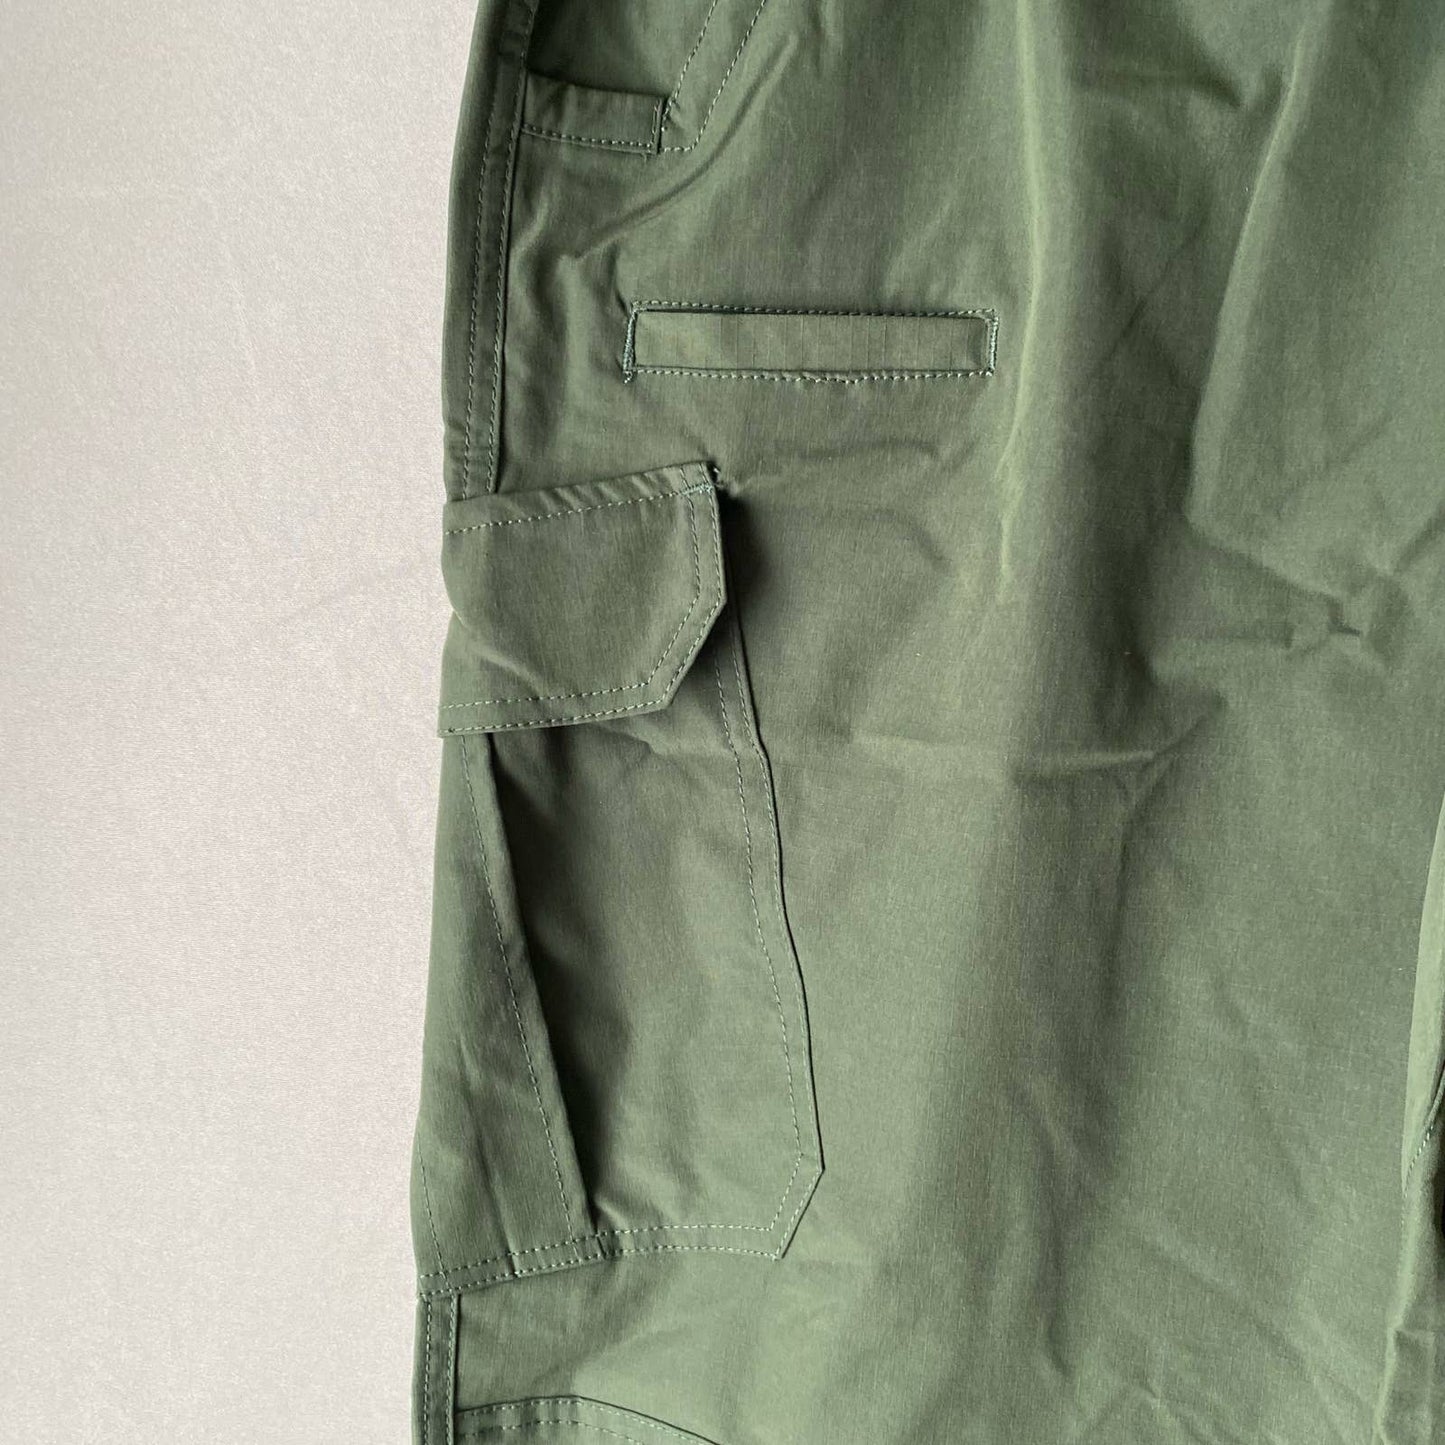 Tactical Pants 9 Pockets Green sz 2XL utility cargo pants NWT